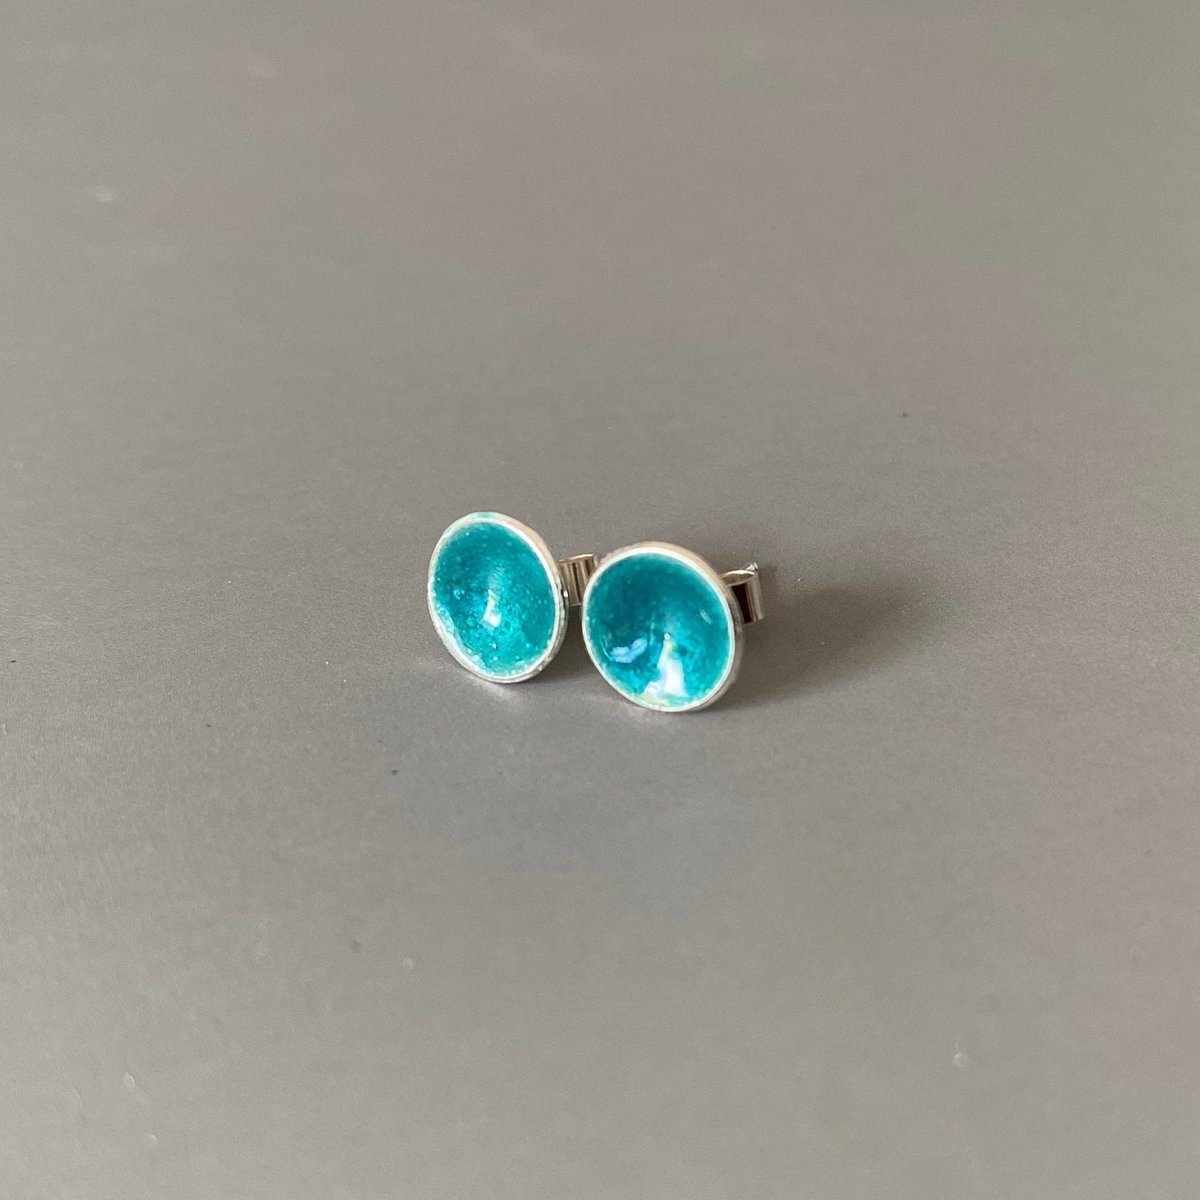 Small Turquoise Enamel and Sterling Silver Ear Studs, Cute Enamel Earrings tuppu.net/566aa349 #ShopIndie #Etsy #MaisyPlum #MHHSBD #UKCraftersHour #SilverPostEarrings